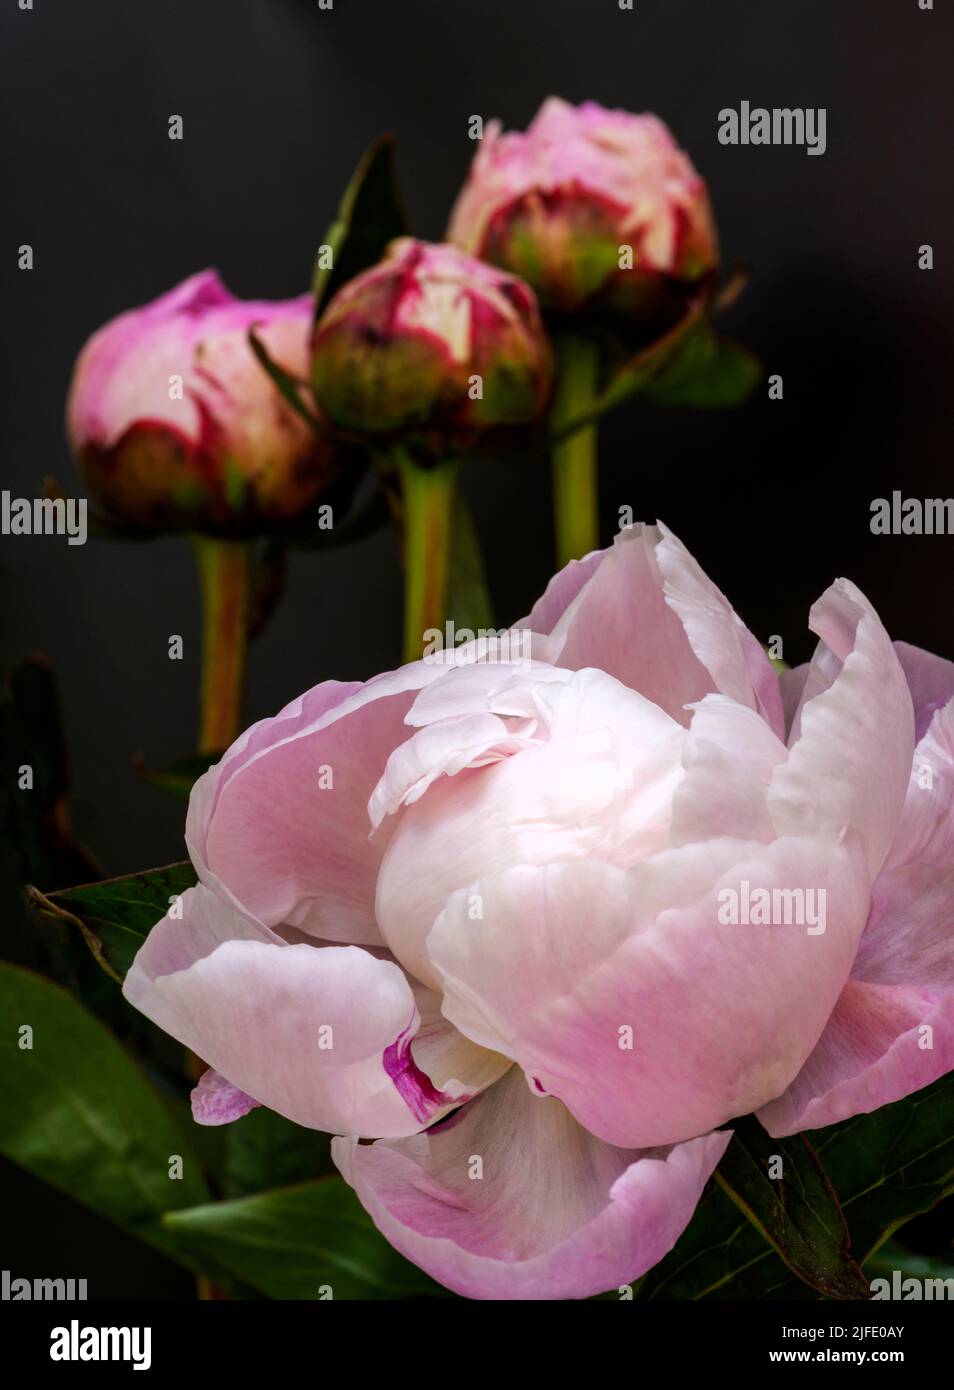 Une belle fleur de pivoine rose qui s'ouvre bientôt, avec trois bourgeons en arrière-plan. Les pétales pliés ressemblent à des plumes de cygne. Banque D'Images